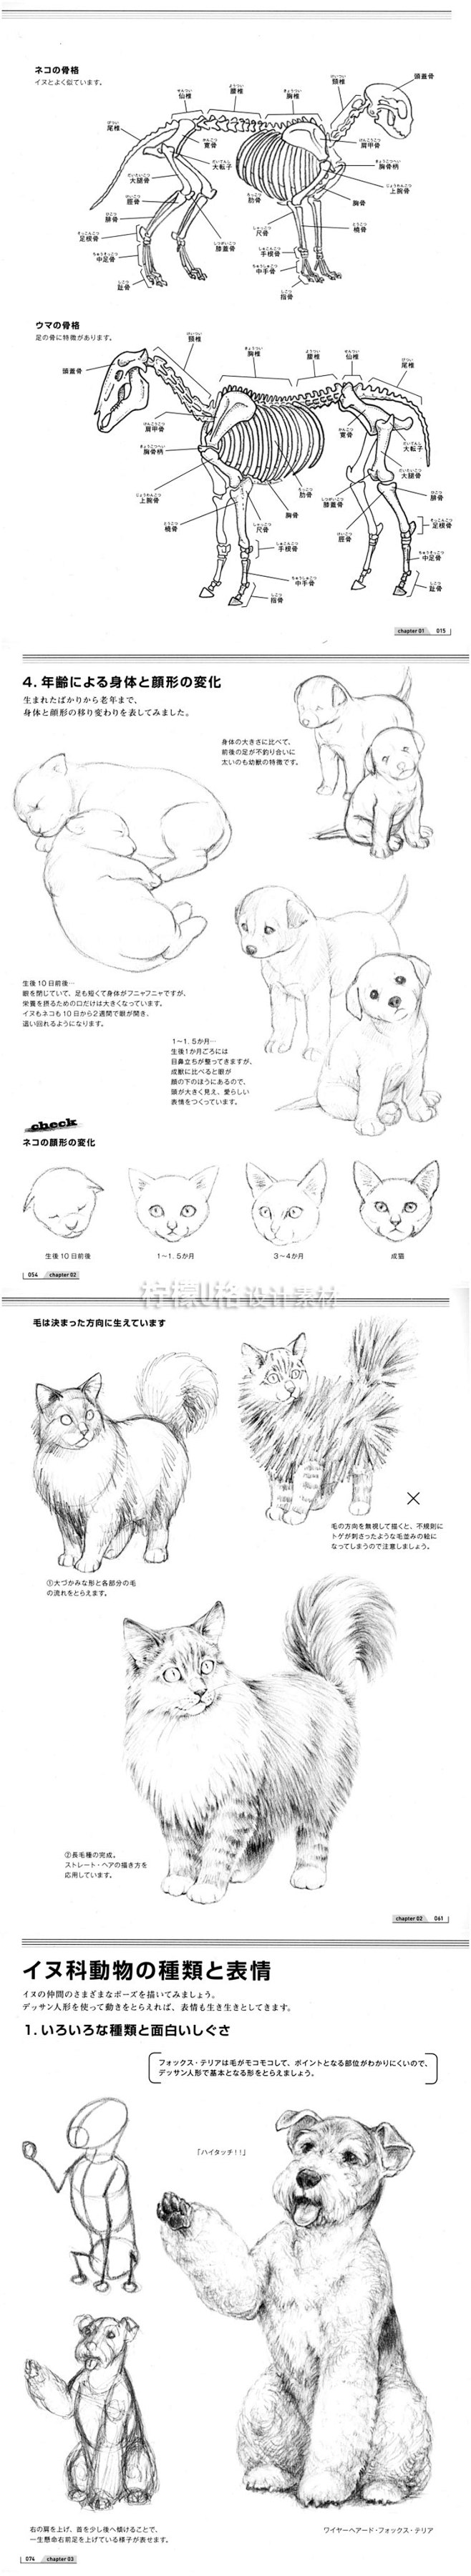 216 爬行动物绘画技法宠物狗猫手绘教程...